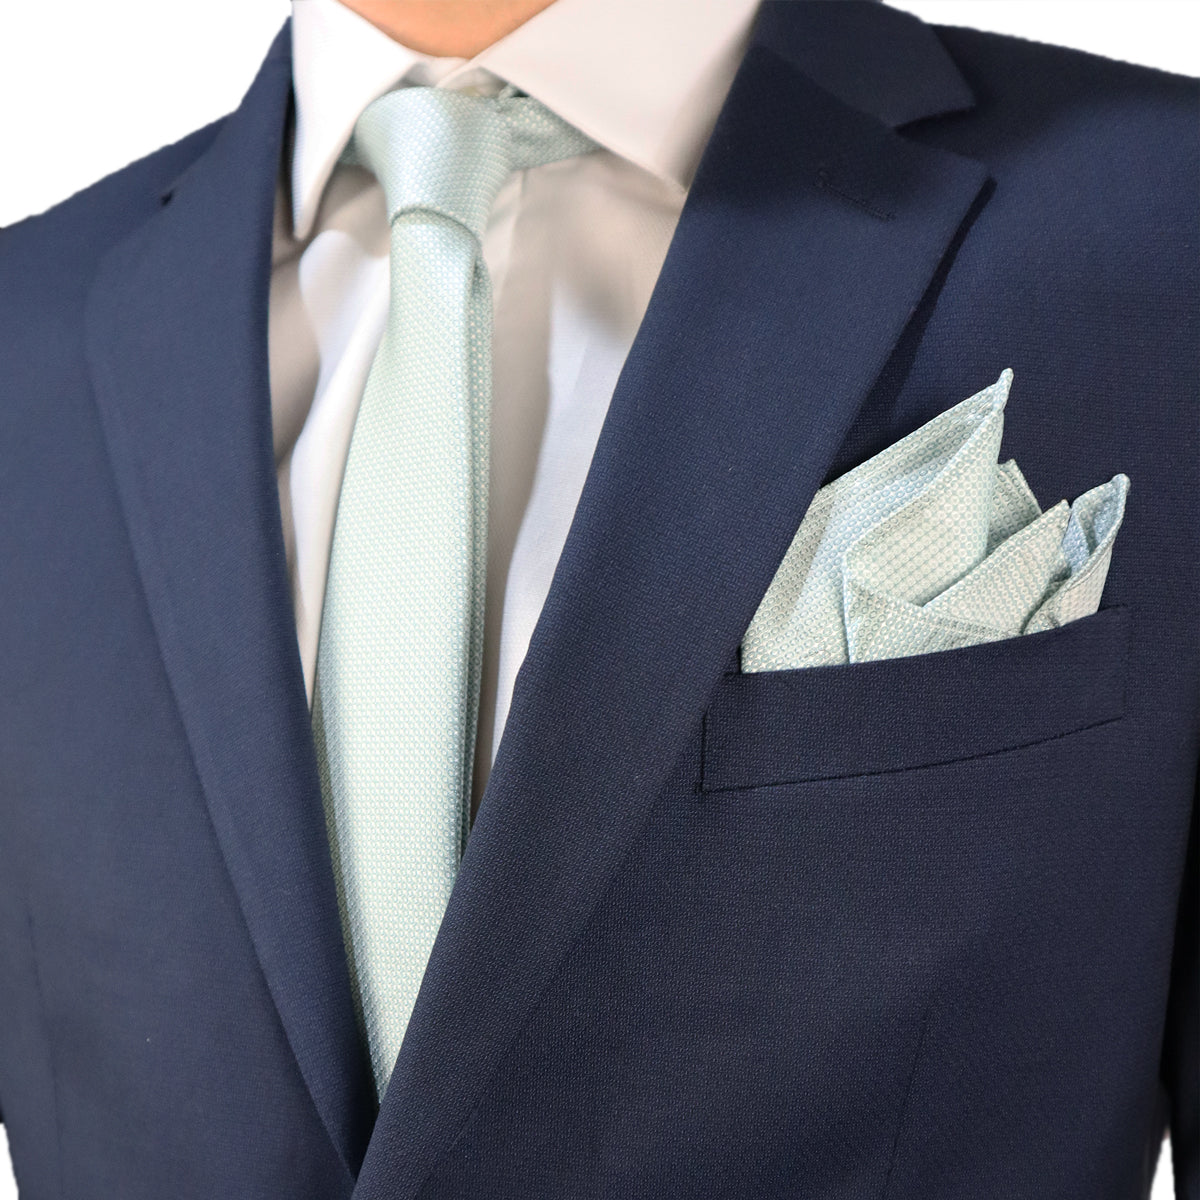 Κοστούμι Ανδρικό Μπλε Τερυλέν (Tery/Rayon/Spandex) Semi-Slim Fit 502627 1-NAVY